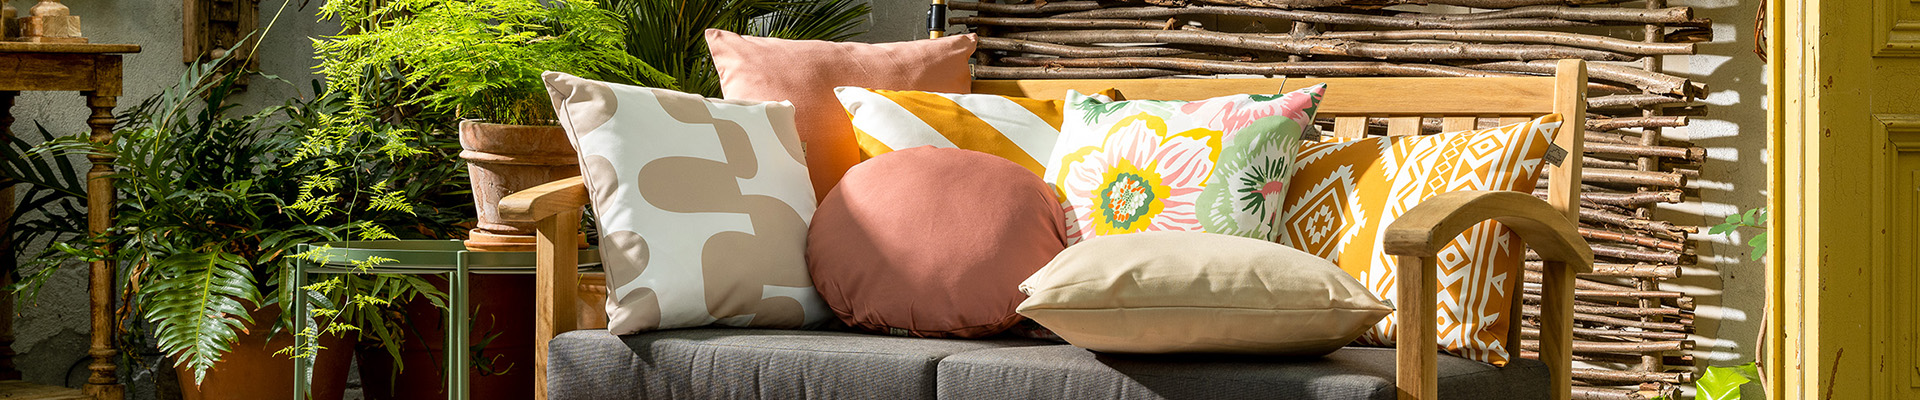 Een comfortabele tuinbankje met kleurrijke kussens  van Dutch Decor erop. Perfect om in te ontspannen en tot rust te komen.